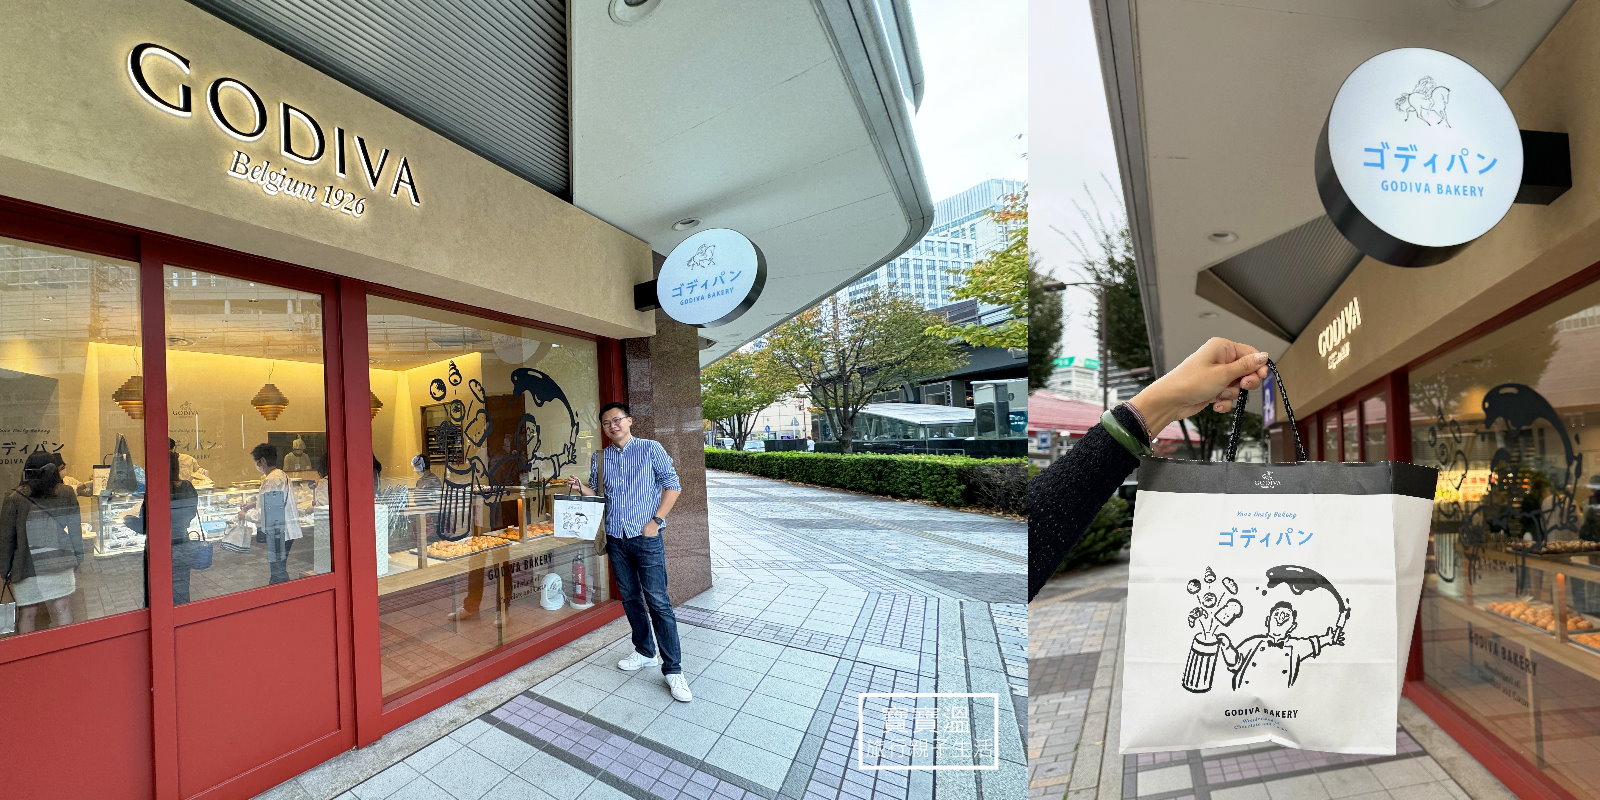 【東京GODIVA Bakery】GODIVA全球首家麵包店, 現場排隊沒用, 要先預約整理券